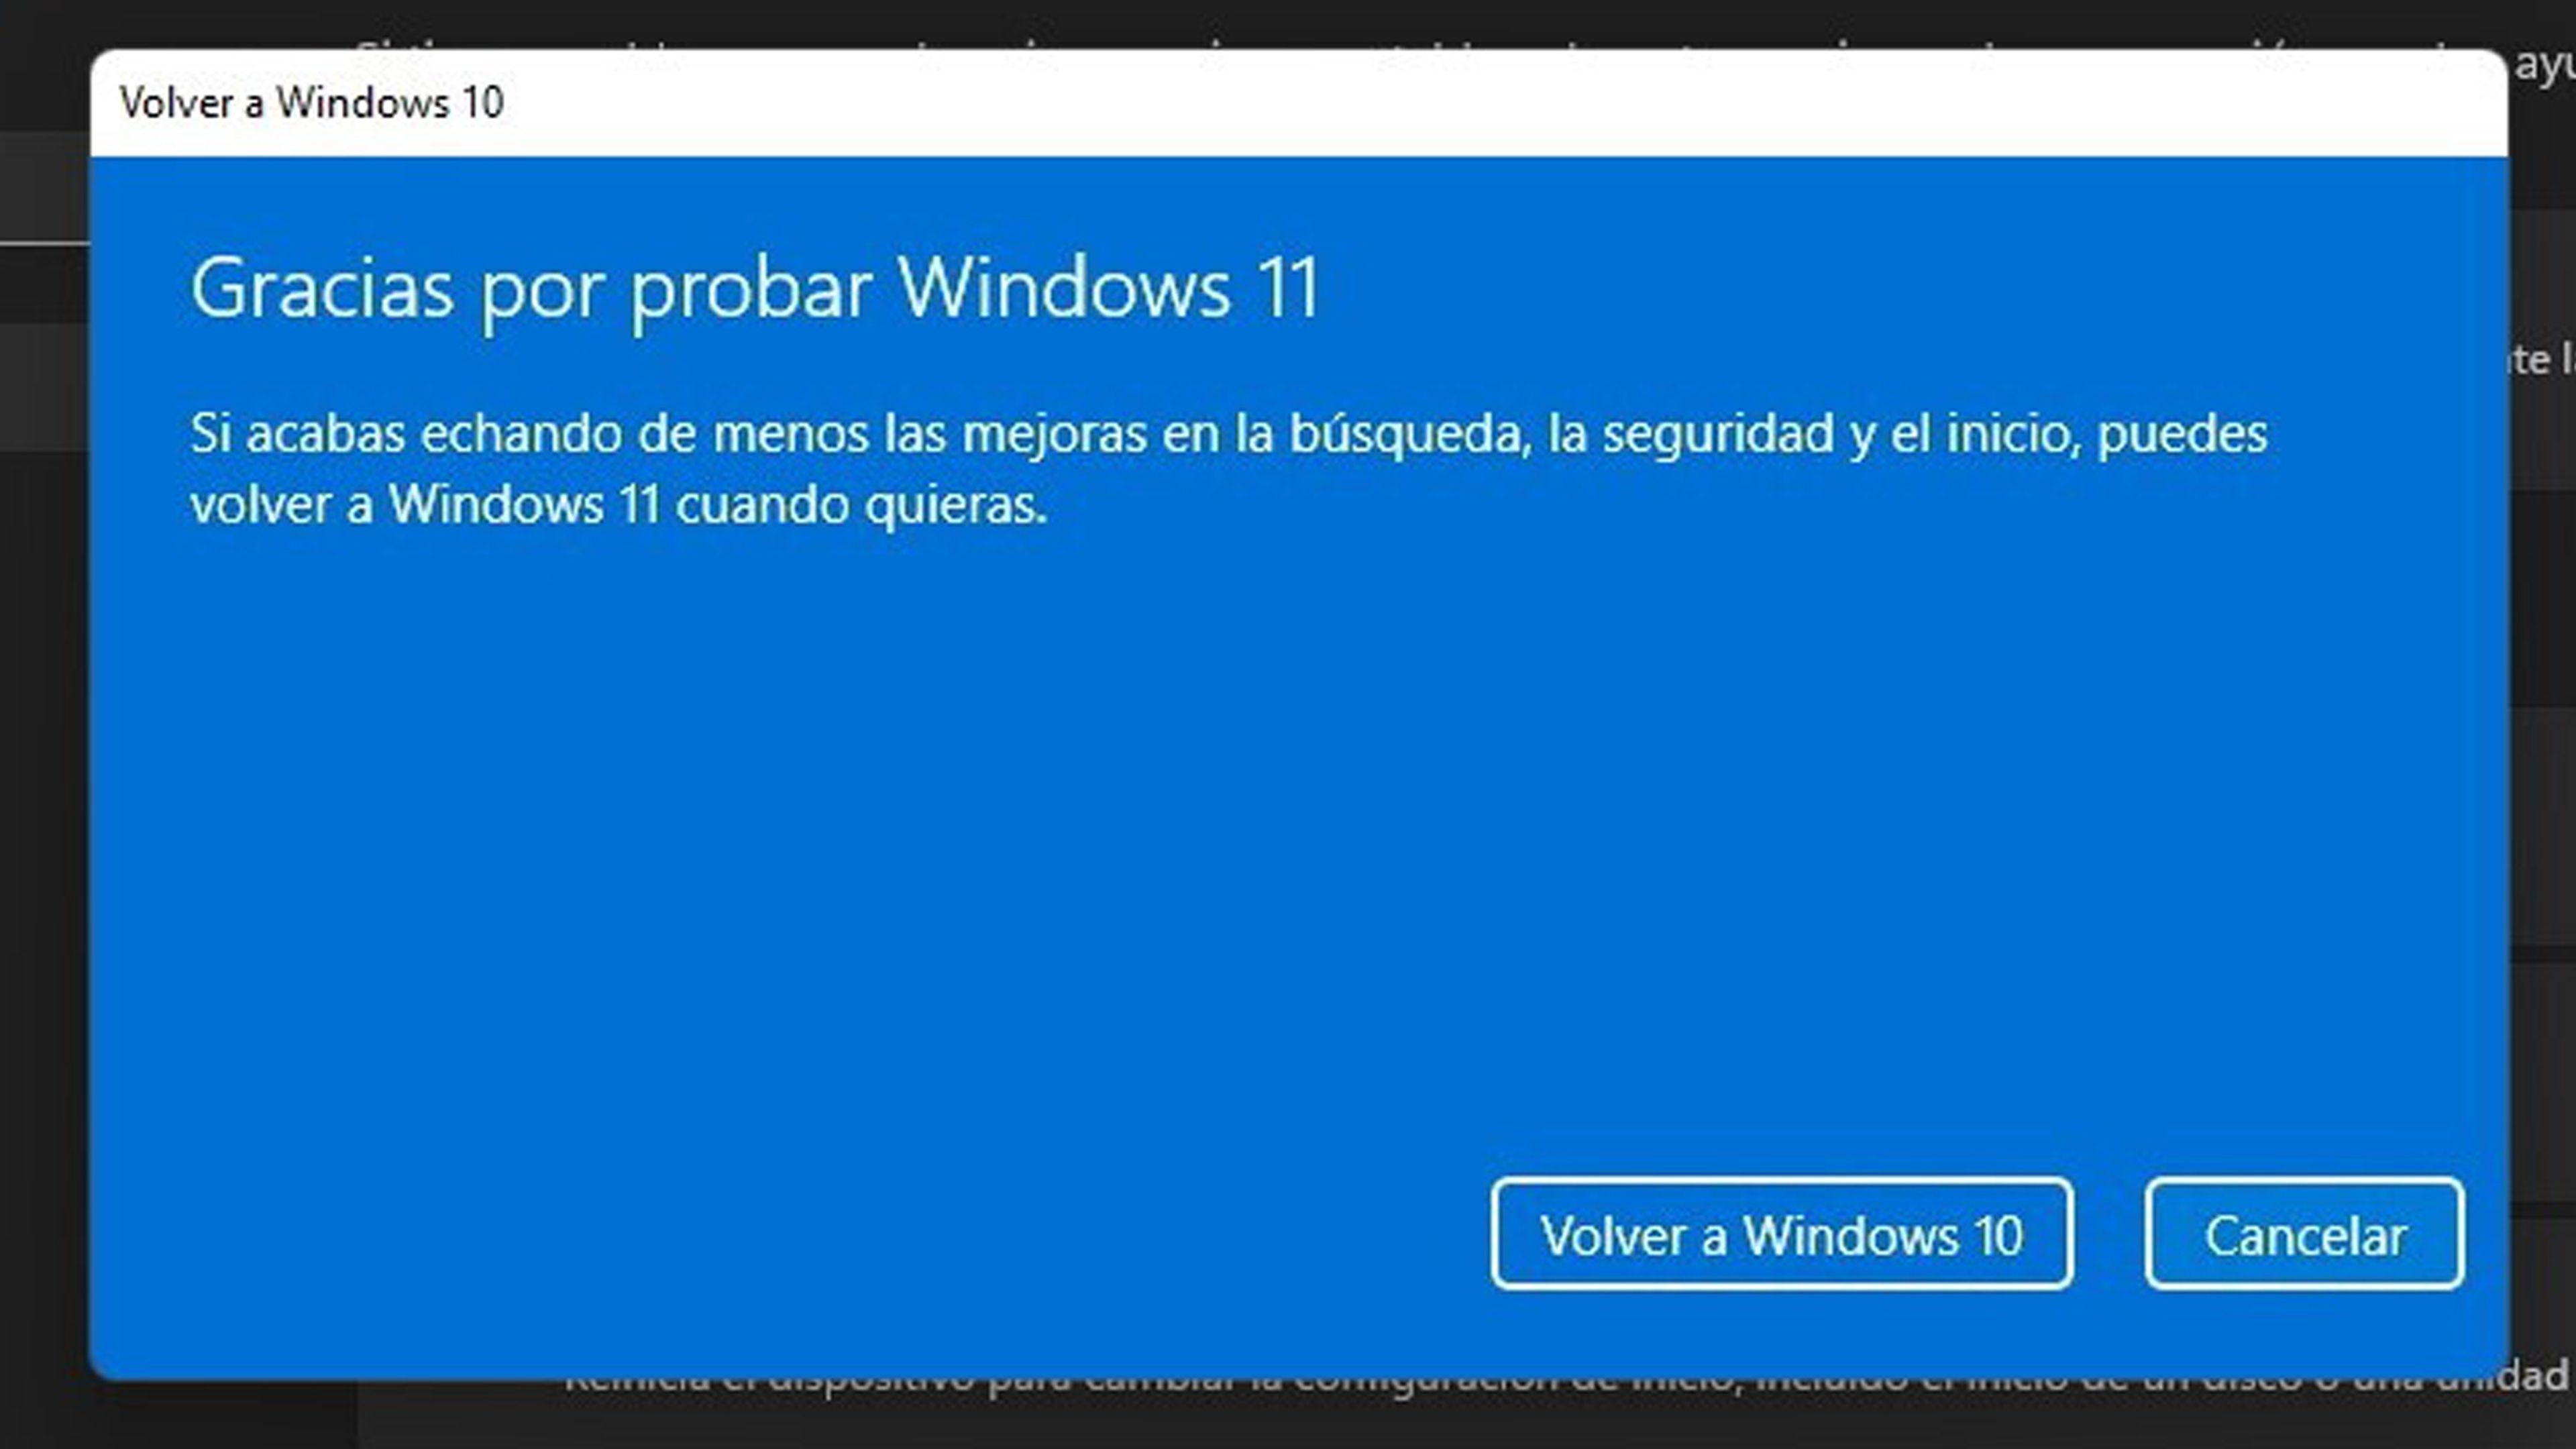 Volver a Windows 10